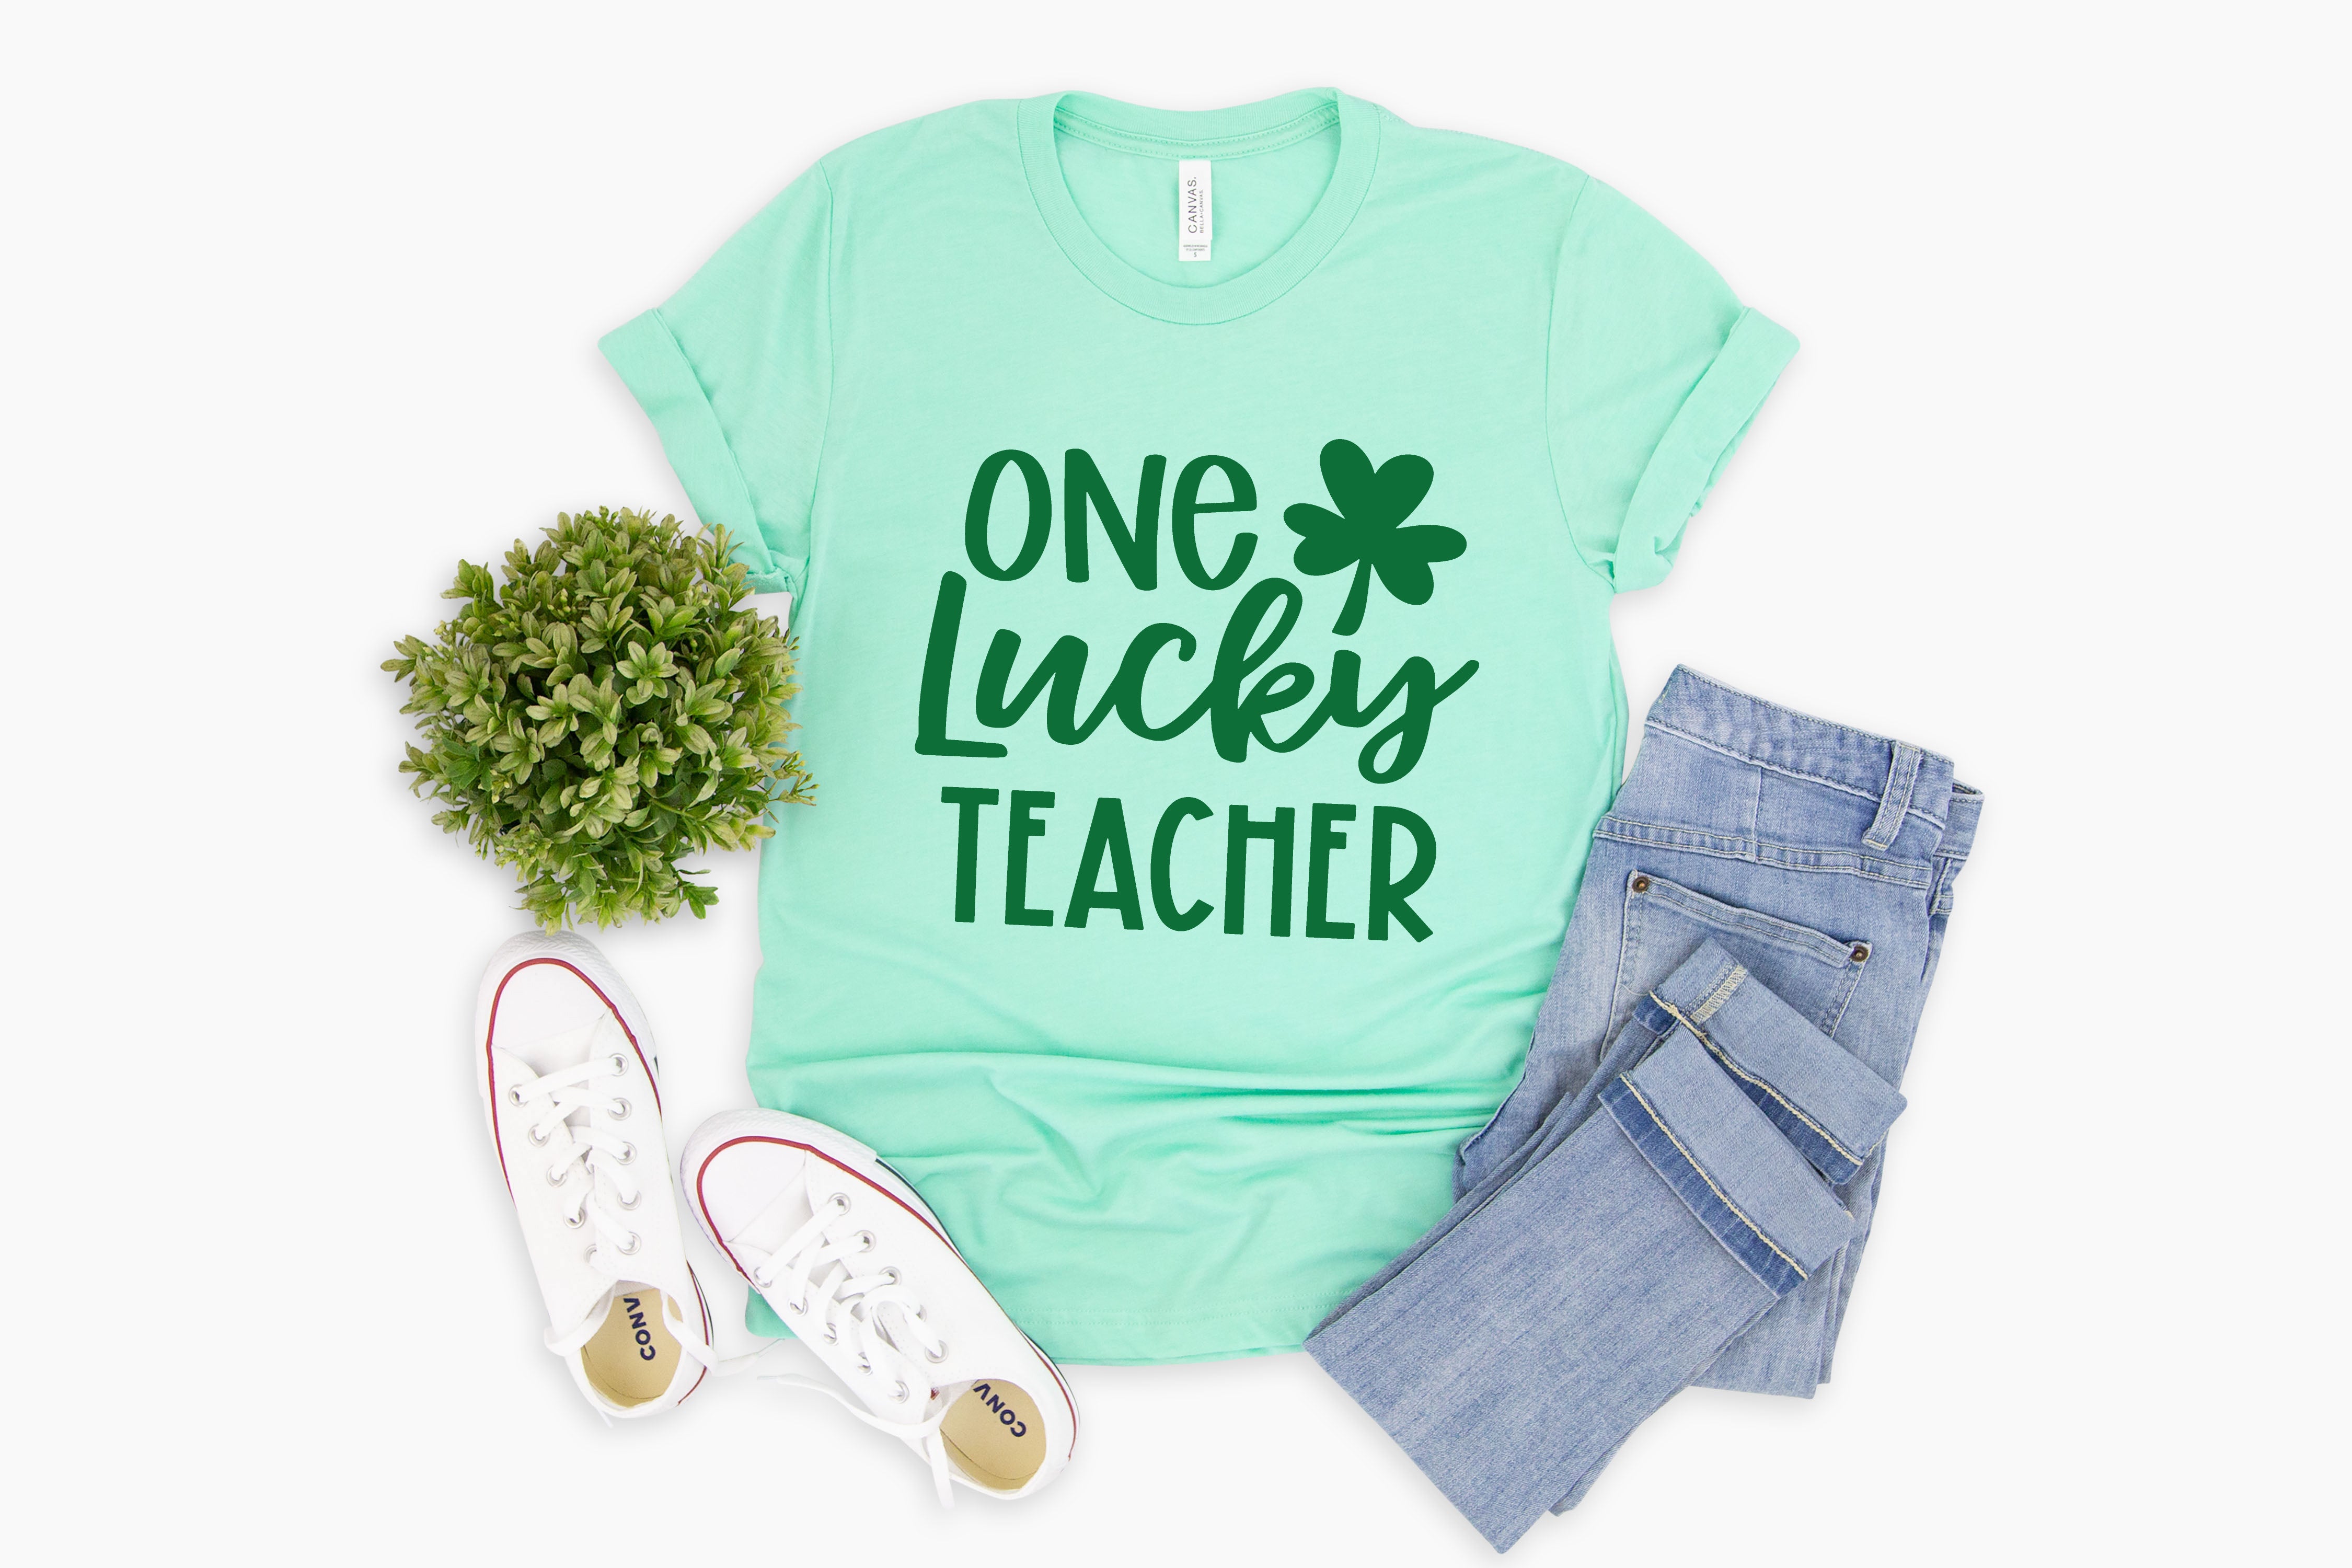 One Lucky Teacher t-shirt